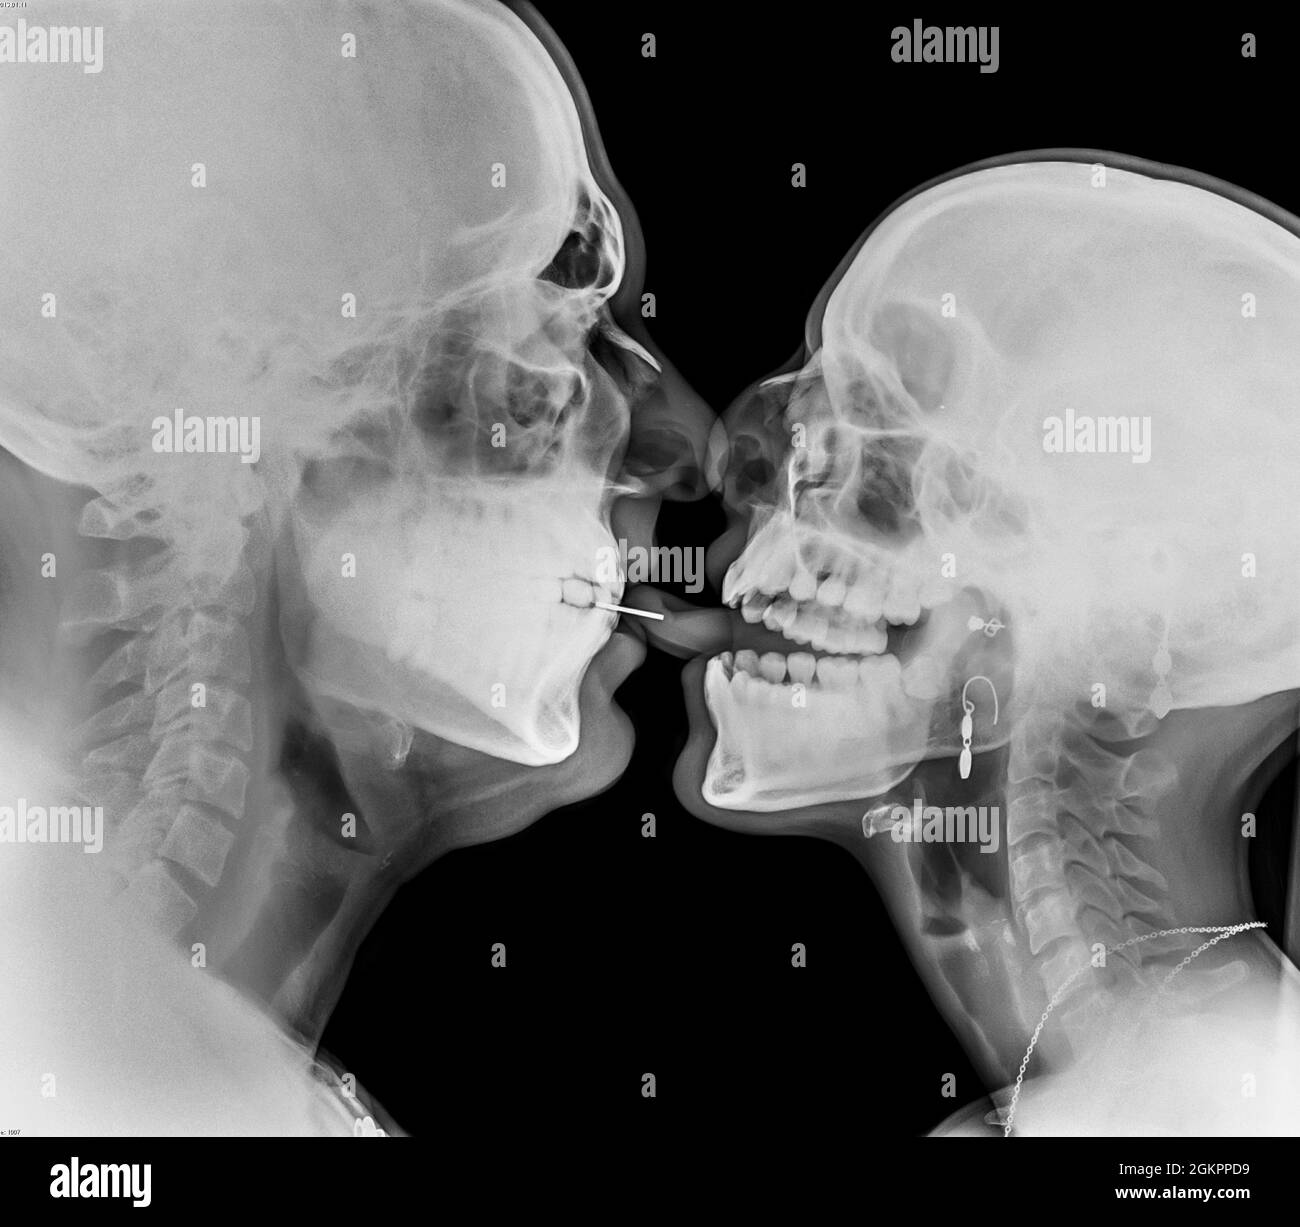 Küssendes Paar. Zwei Menschen, die sich unter einer röntgendurchbohrten Zunge küssen, sind zu sehen Stockfoto